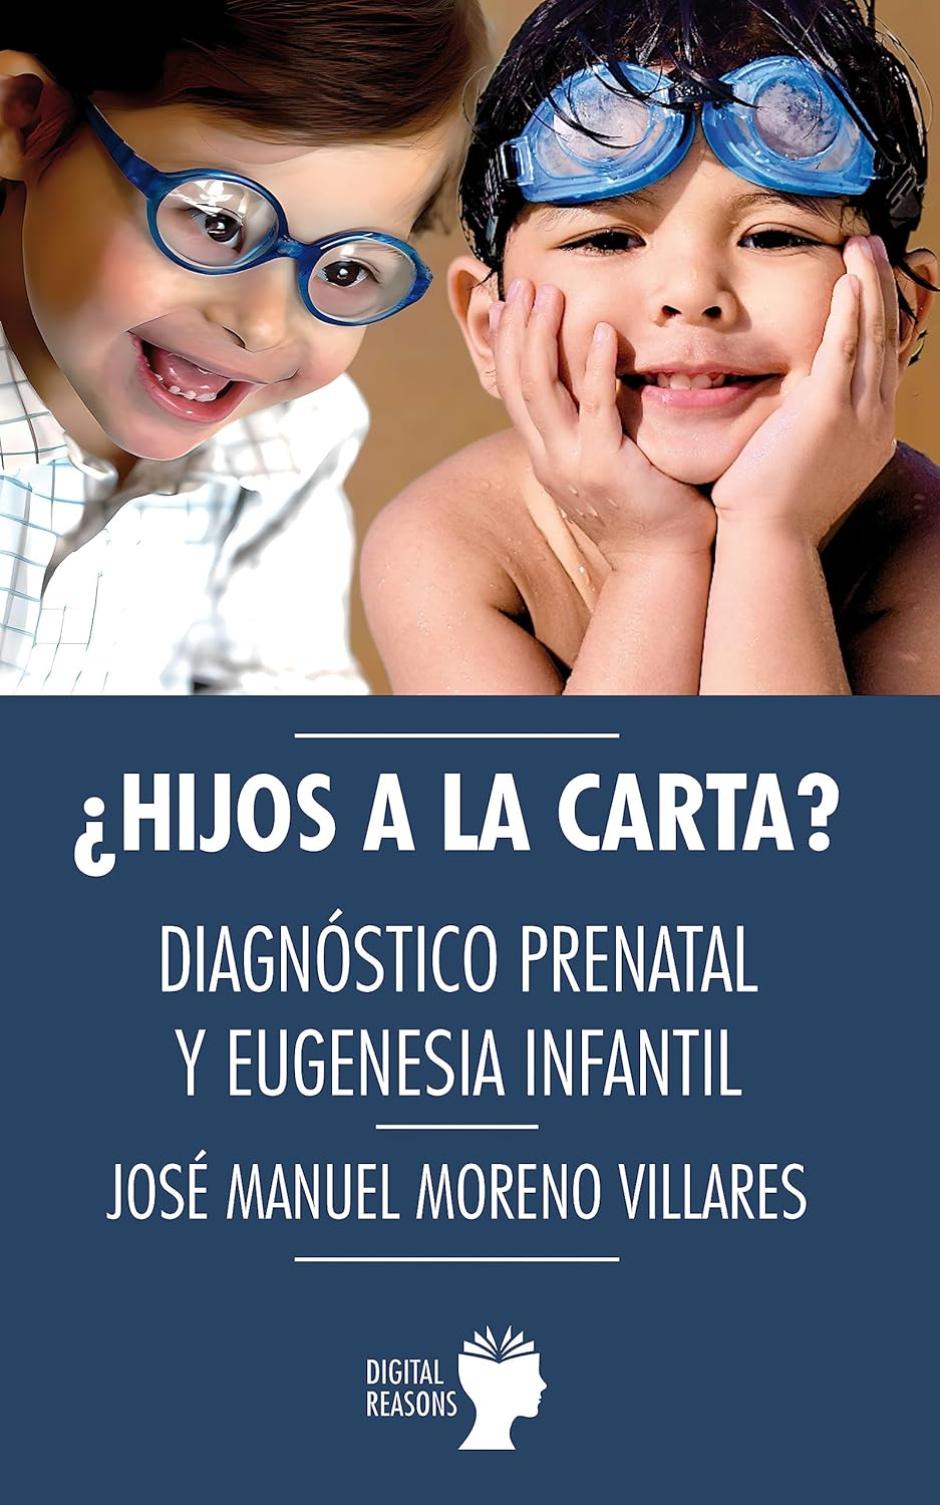 Hijos a la carta: Diagnóstico prenatal y eugenesia infantil.